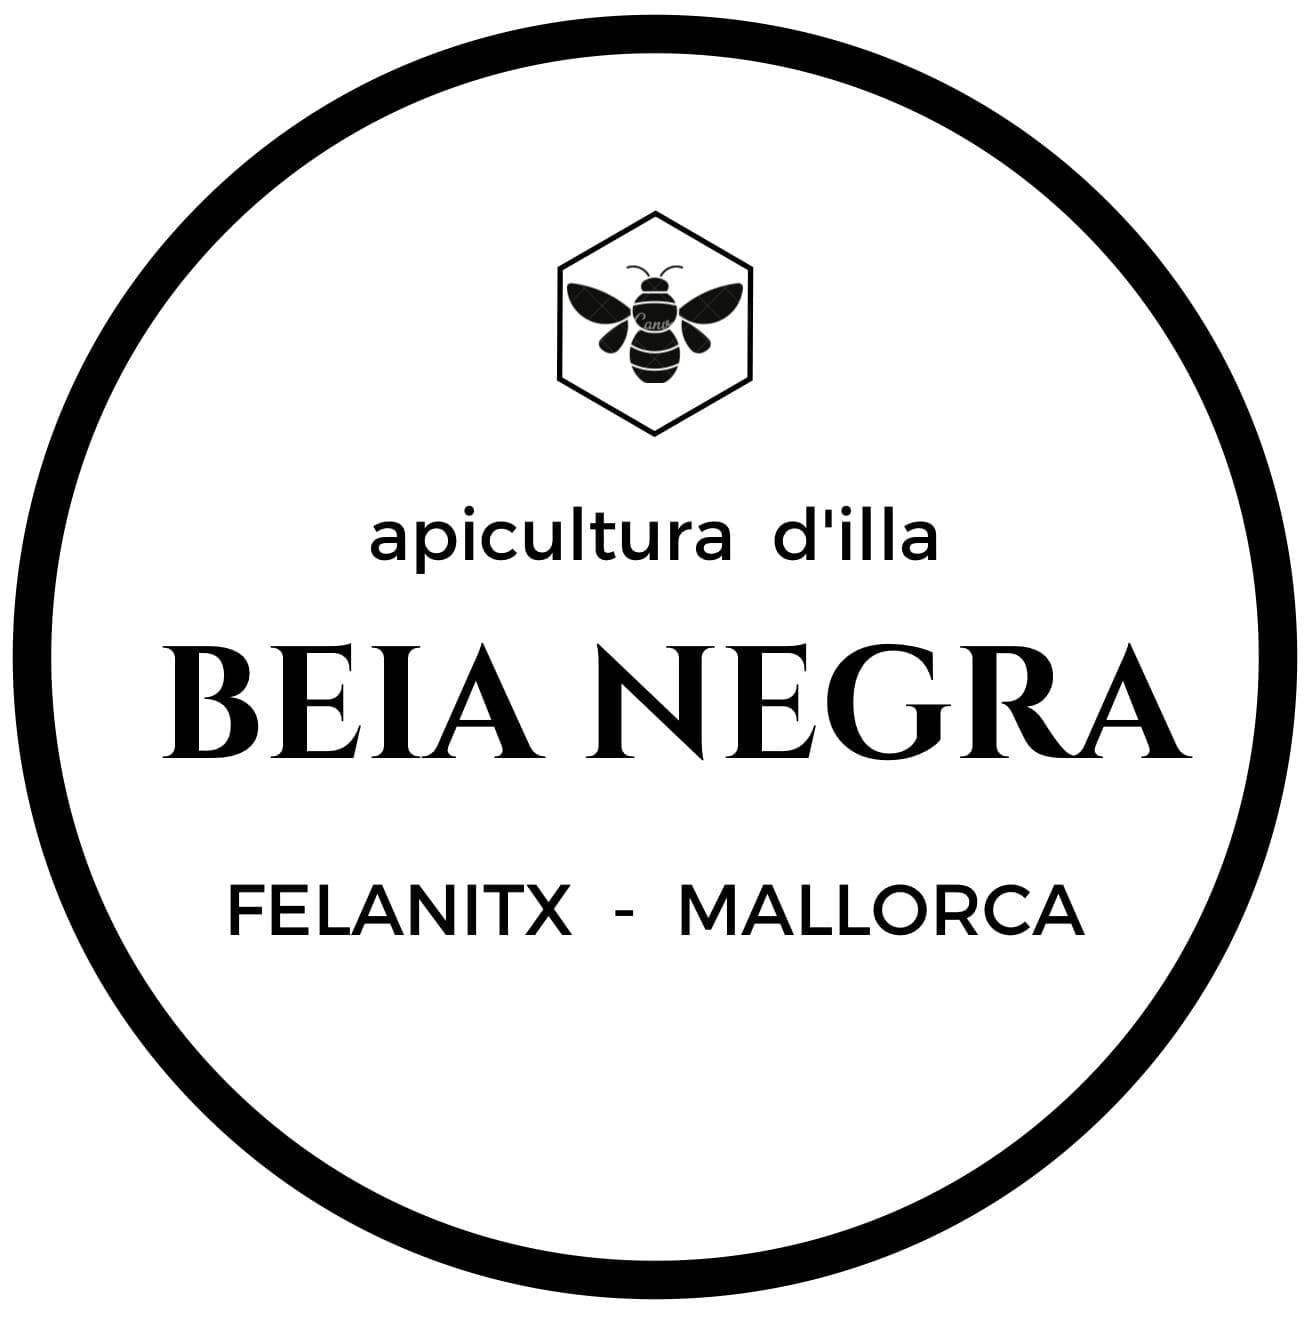 100% Honig aus Mallorca - Authentisches und hochwertiges Produkt, Frucht einer delikaten Arbeit mit Leidenschaft für Bienen.